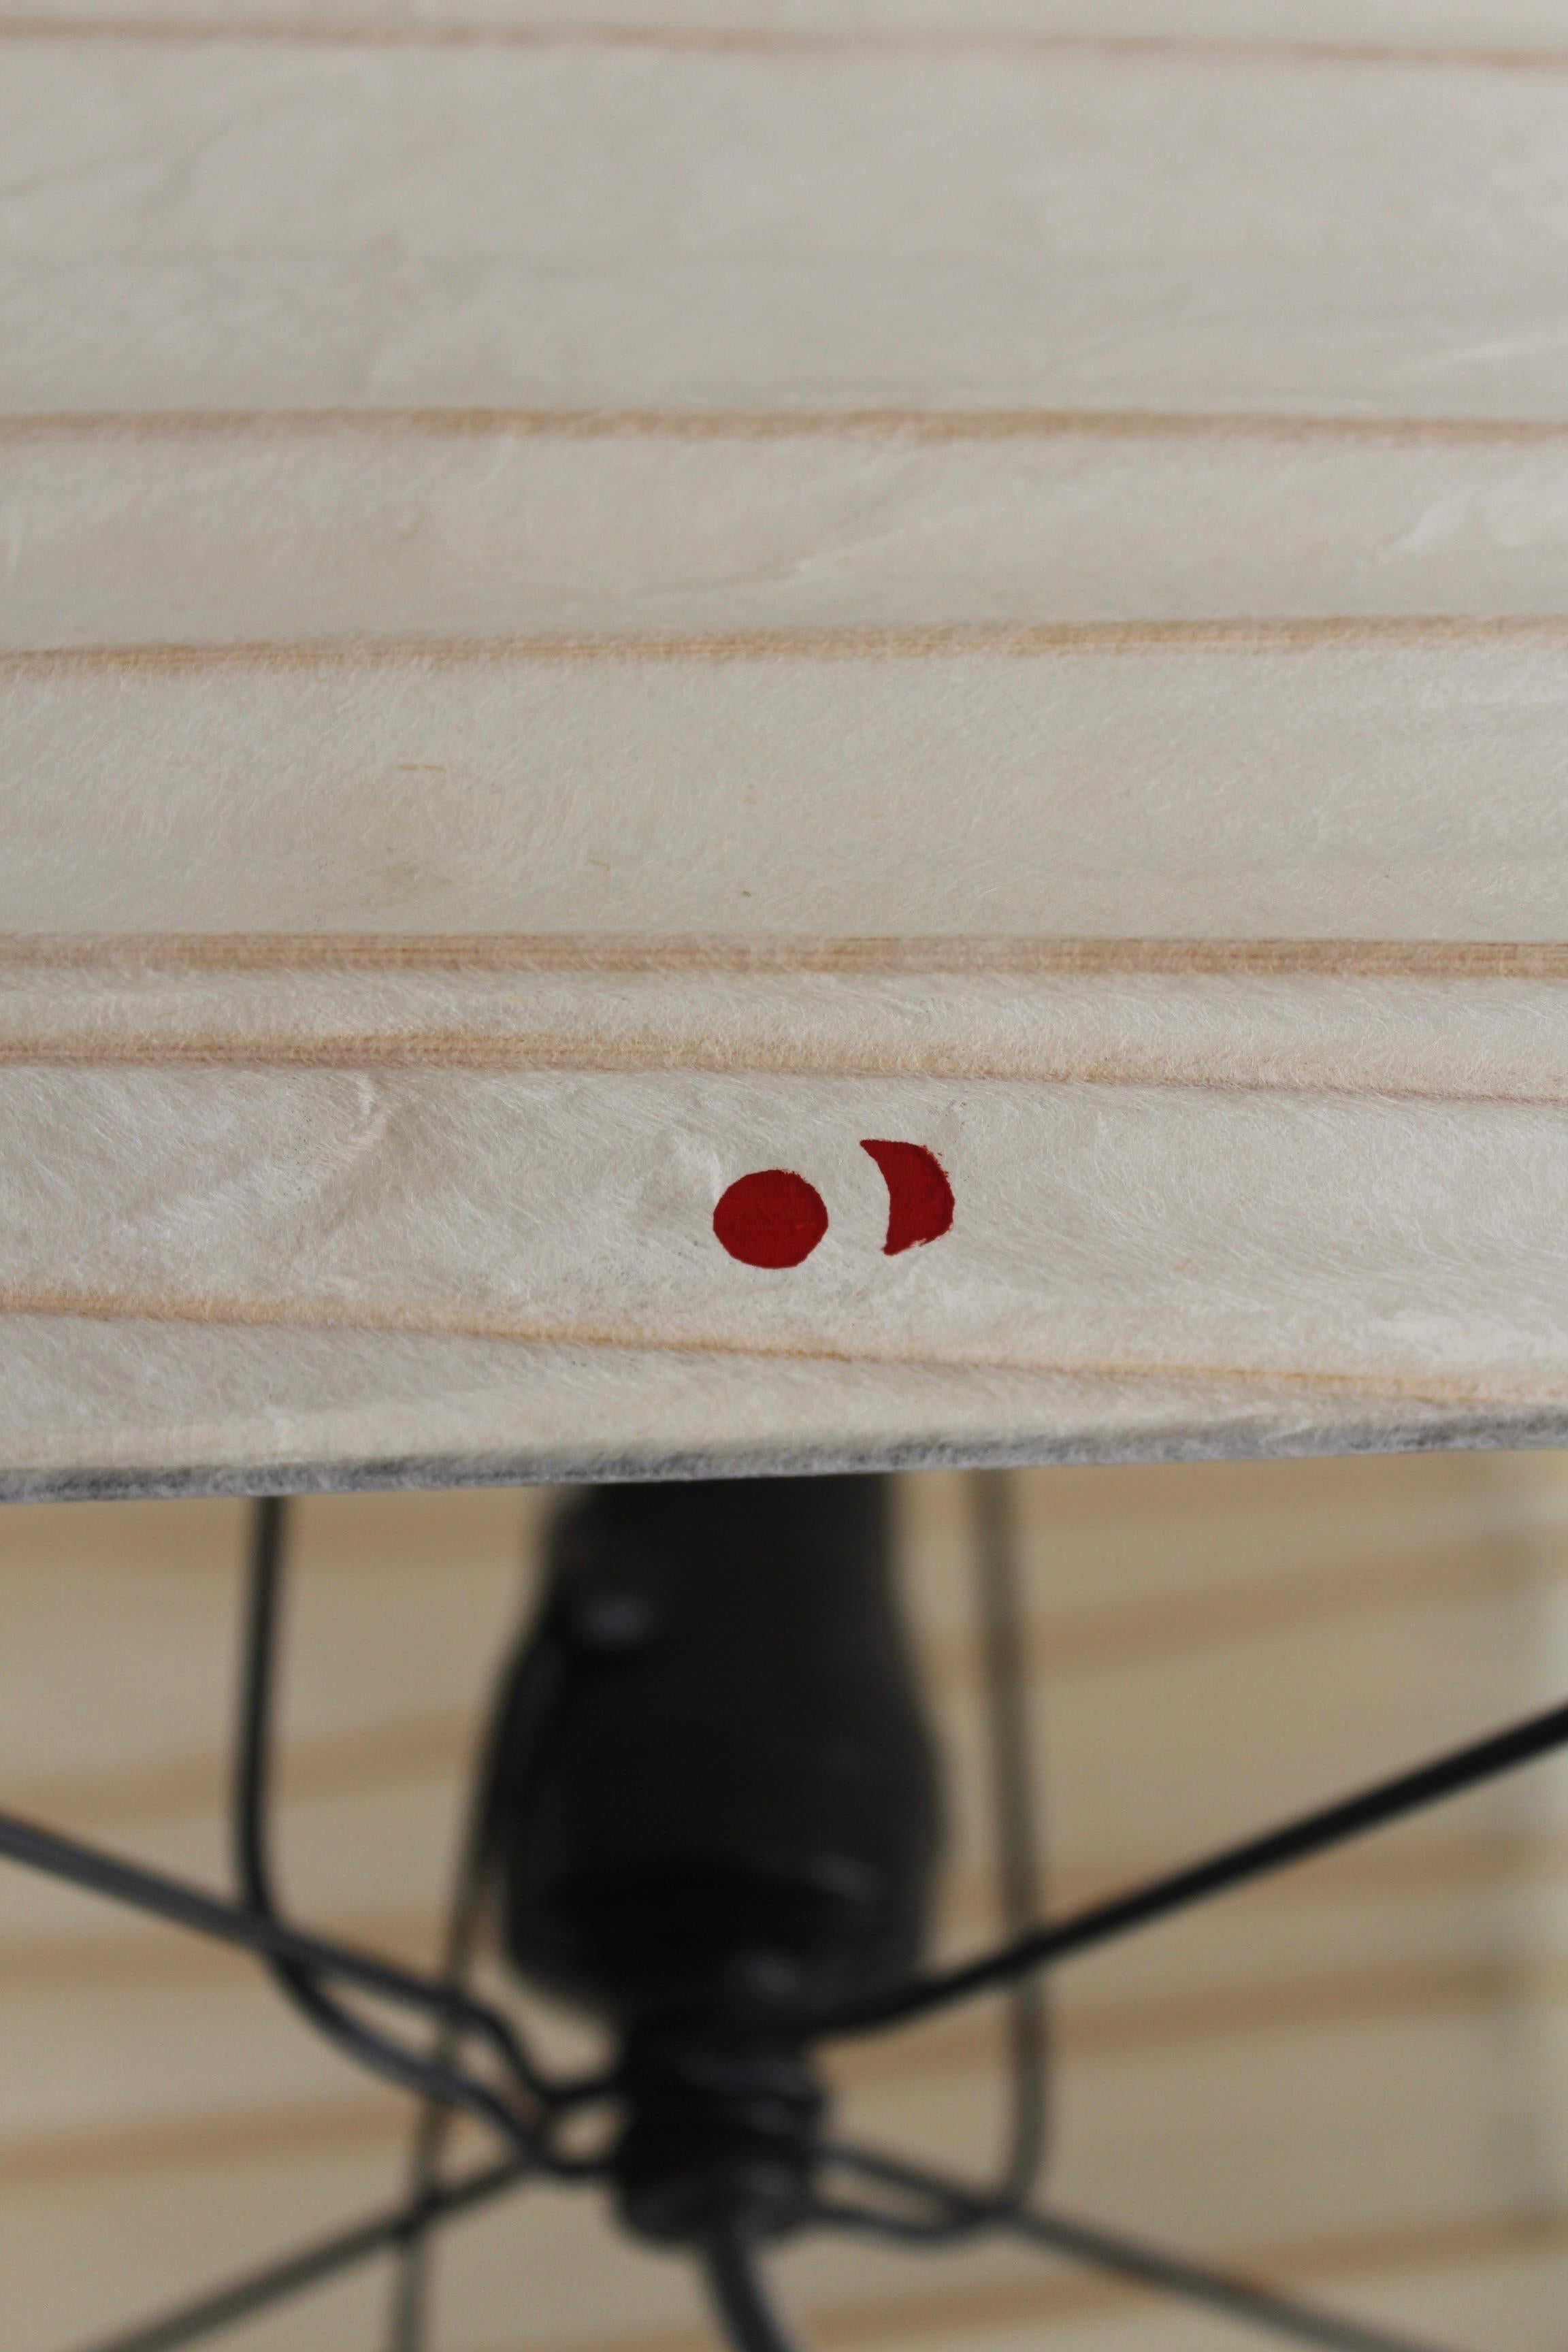 Modèle 3X Lampe de table Akari par Isamu Noguchi, années 1960. Modèle d'édition ancienne, marqué de l'idéogramme rouge du soleil et de la lune. Abat-jour en papier washi, nervures en bambou et armature en métal.

Dimensions : 13,75 